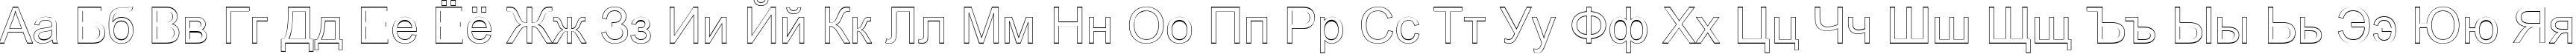 Пример написания русского алфавита шрифтом Arialic Hollow